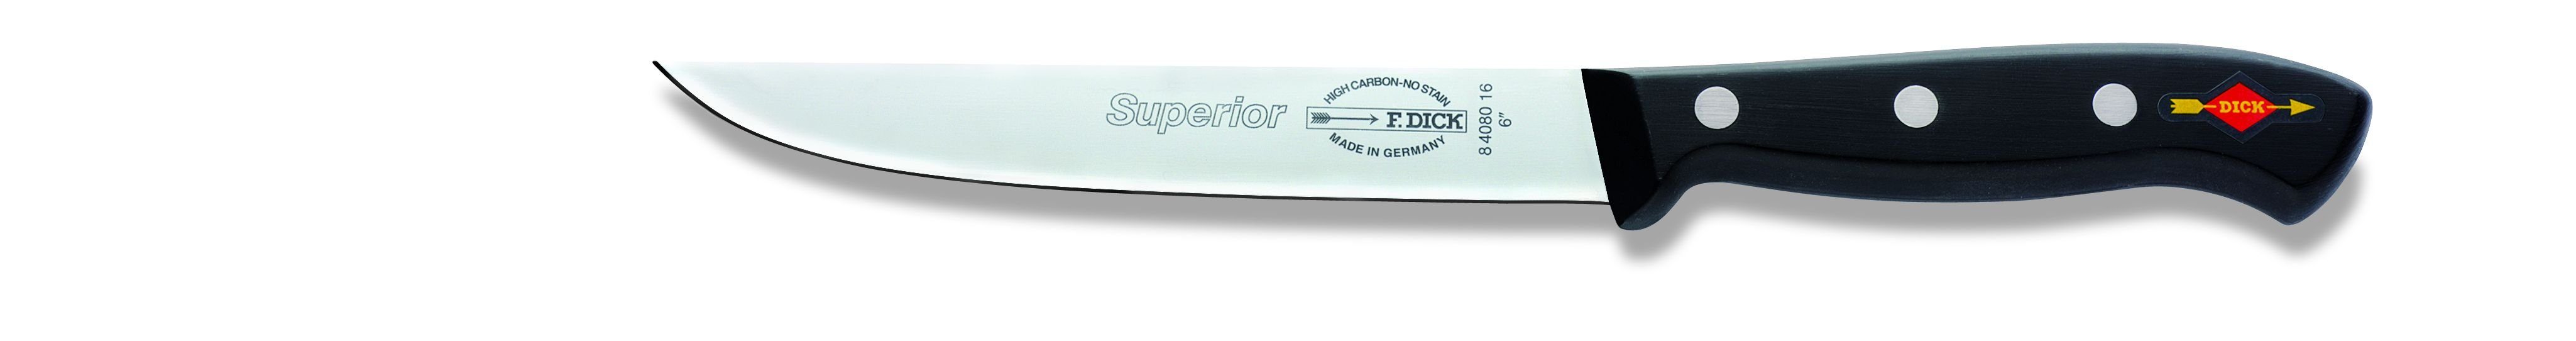 F. DICK Kochmesser F. DICK Kochmesser, Küchenmesser, Superior (Klinge 16 cm